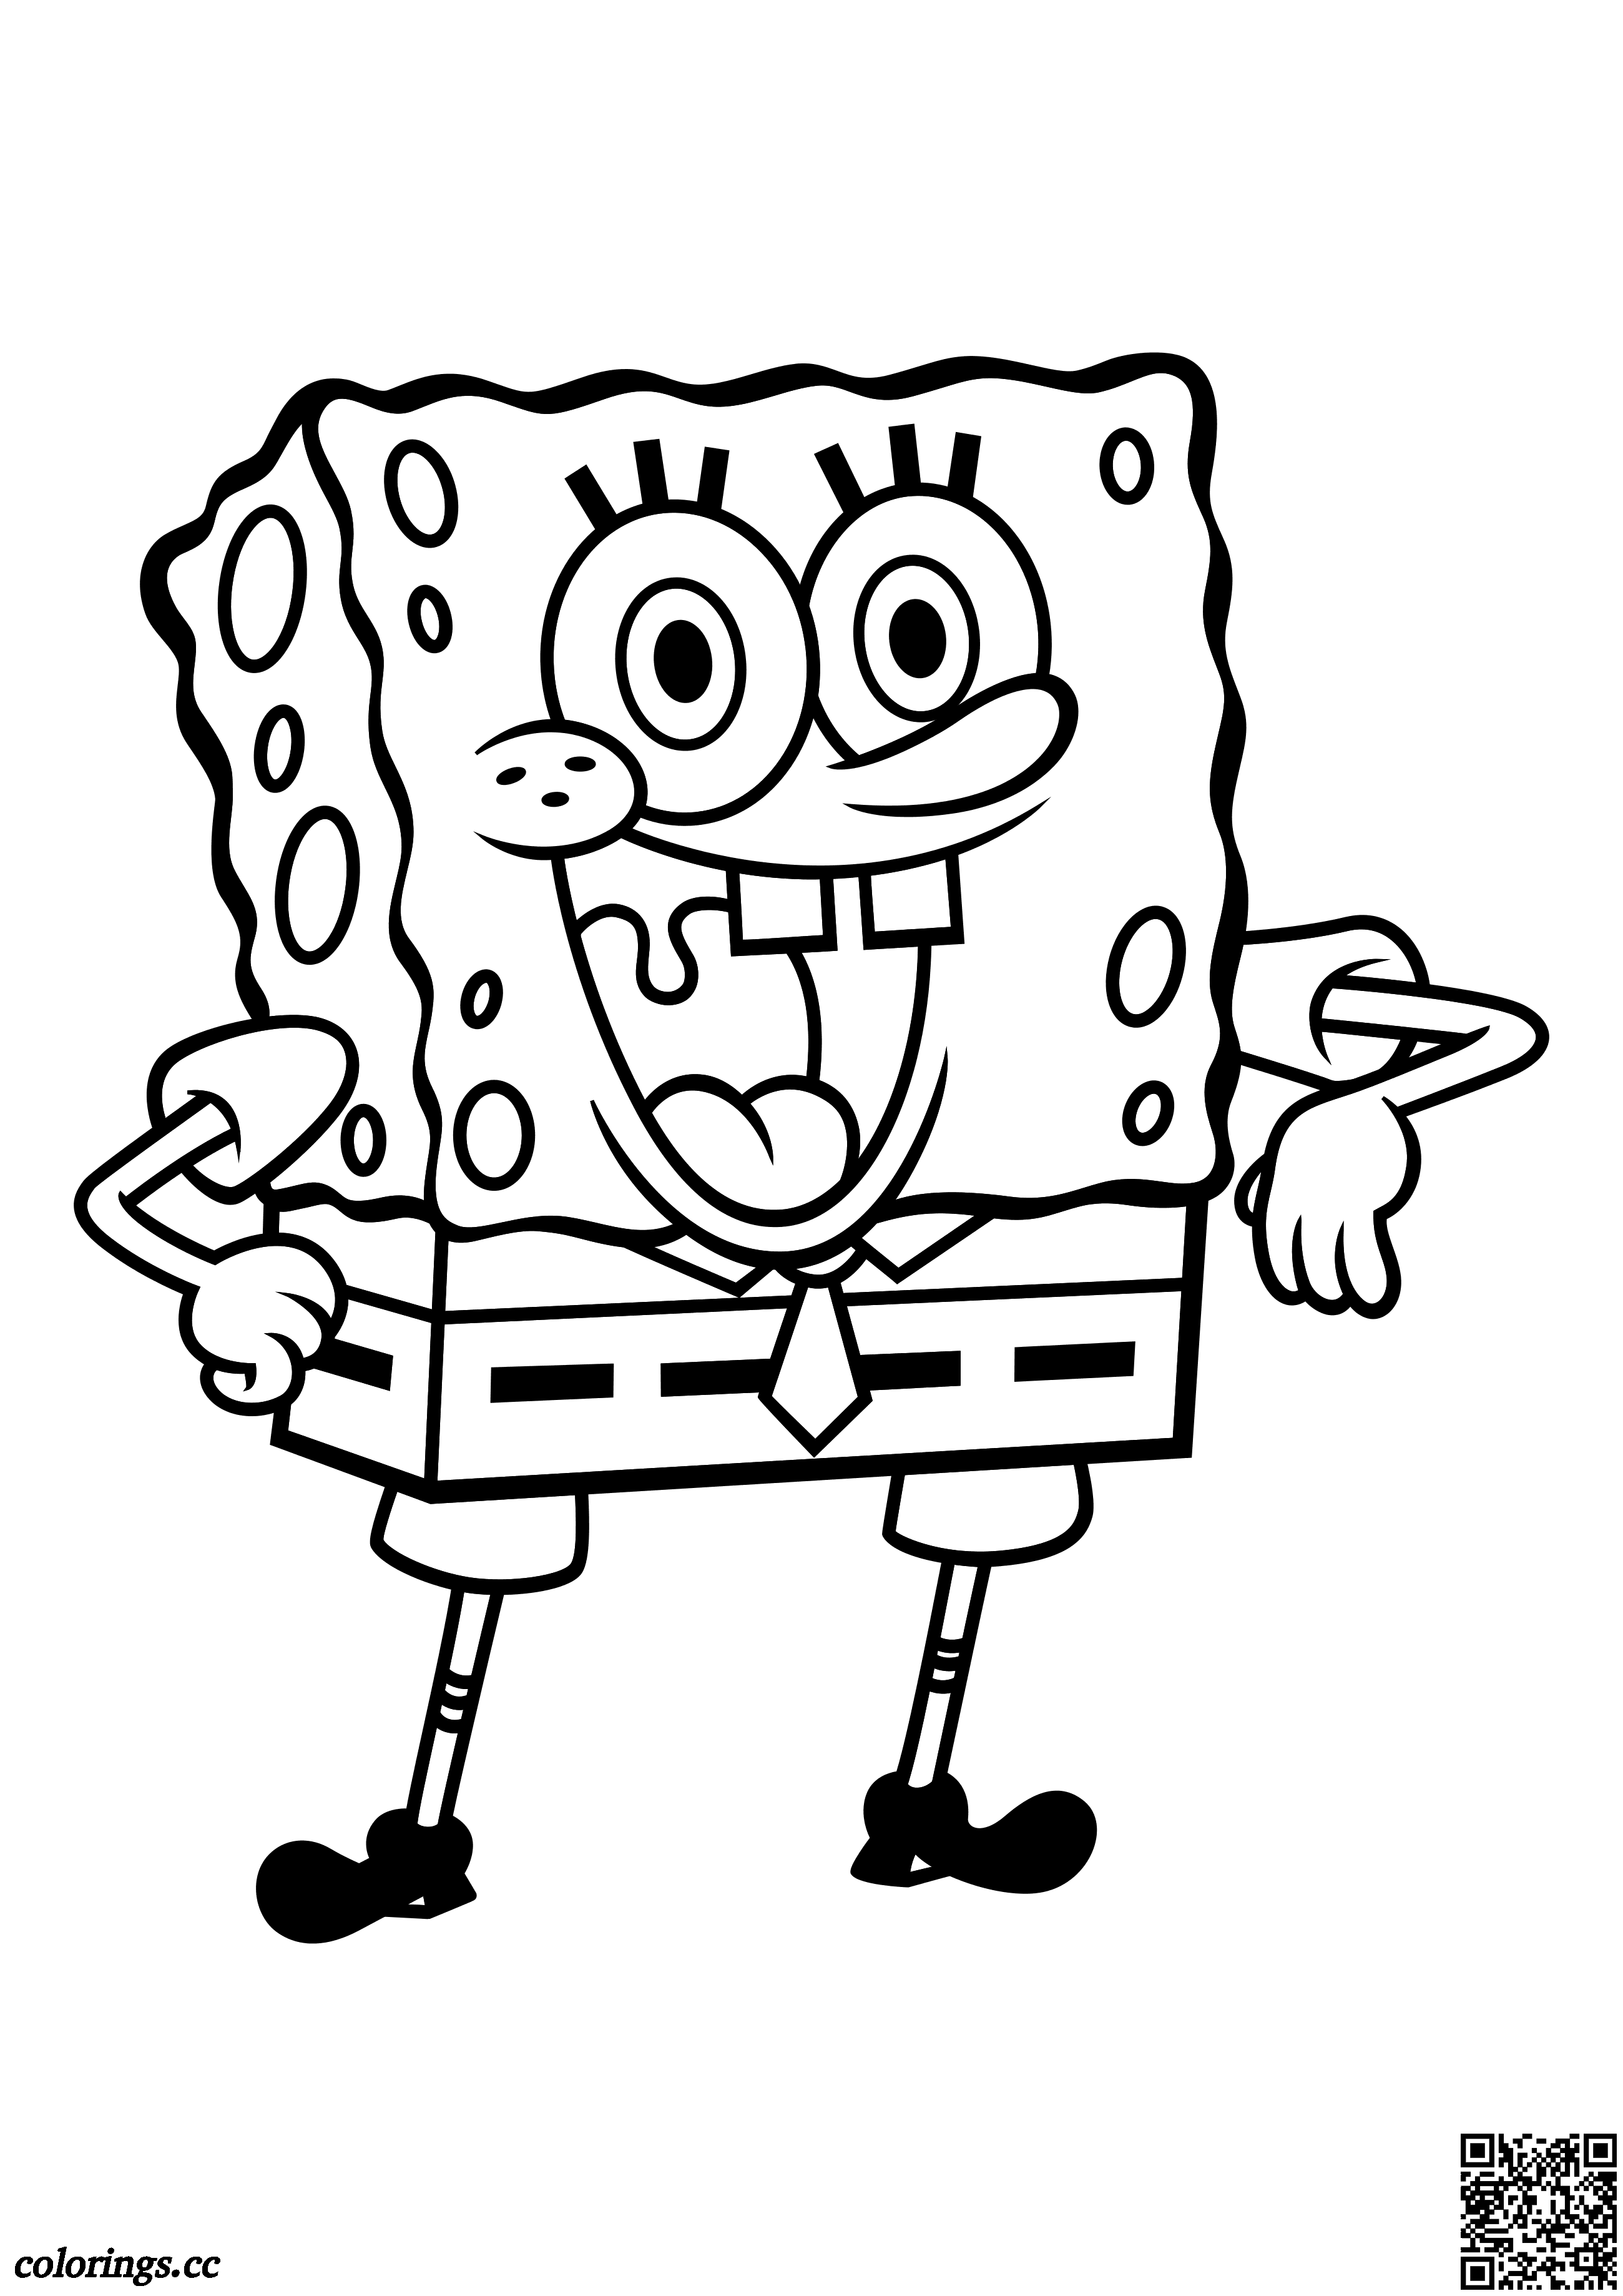 SpongeBob omalovánky, Spongebob v kalhotách omalovánky - Colorings.cc